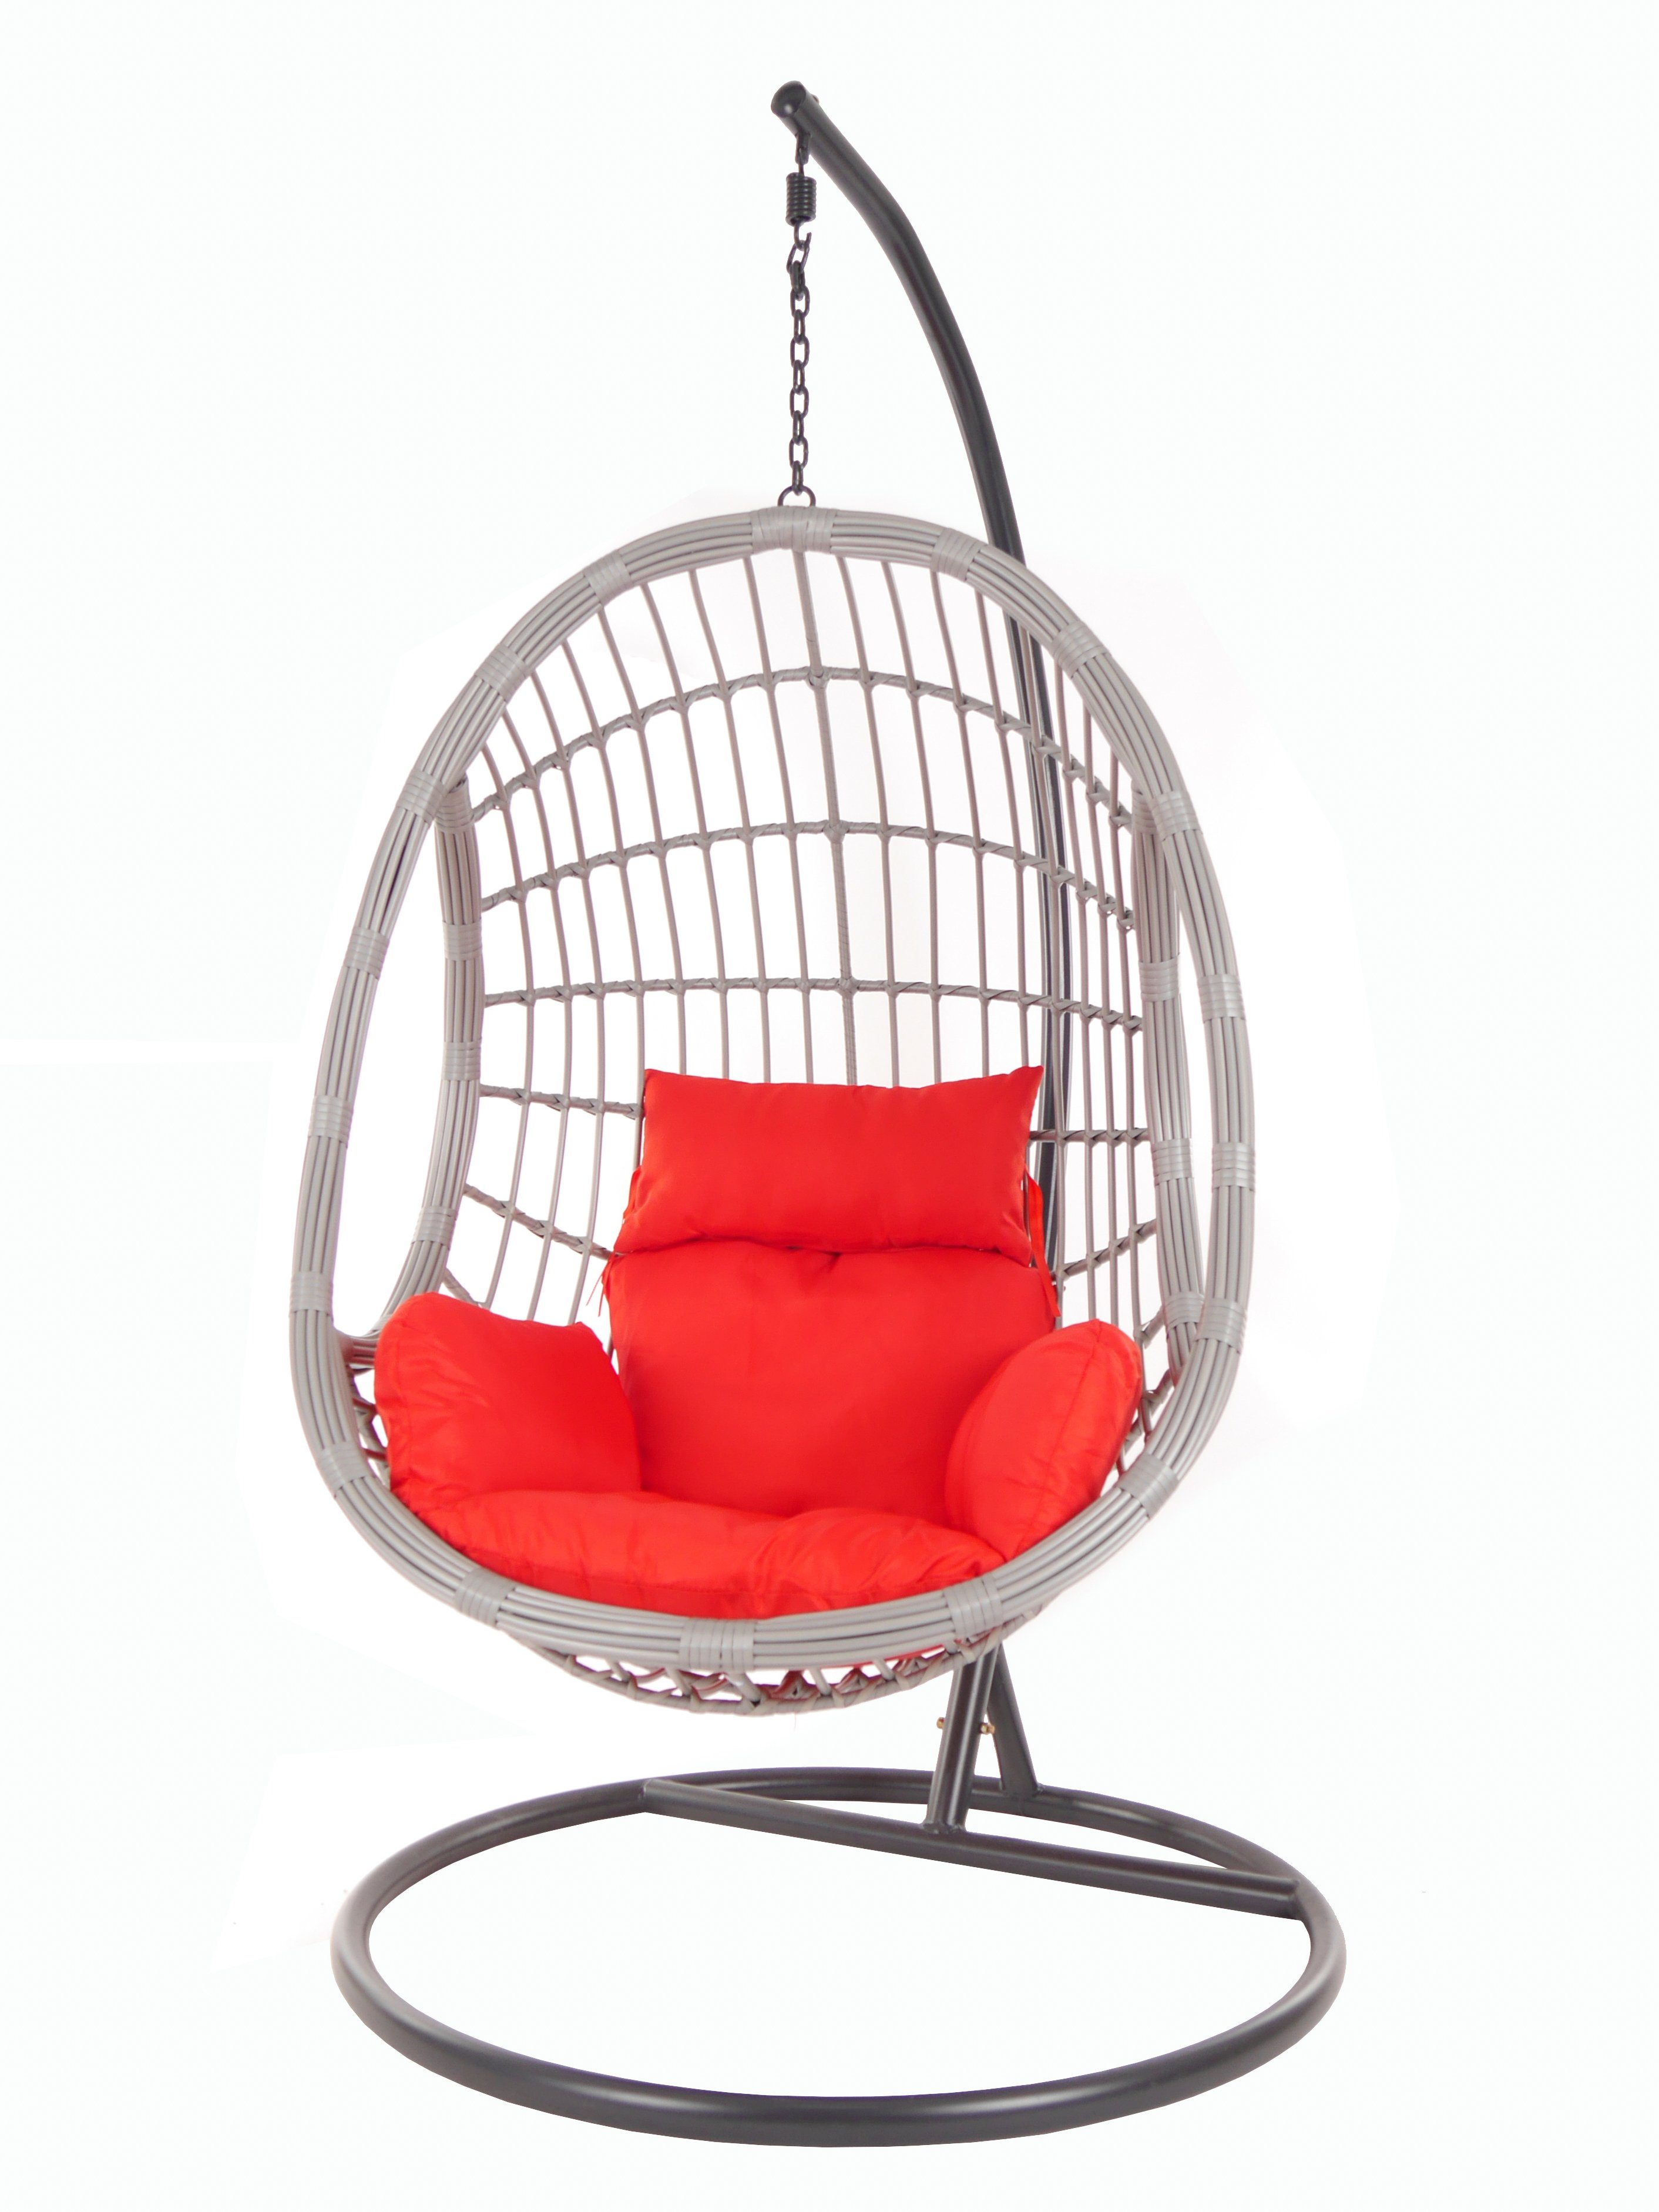 und (3050 lightgrey, rot scarlet) PALMANOVA Hängesessel Schwebesessel Swing Gestell Chair, KIDEO mit Kissen, Loungemöbel